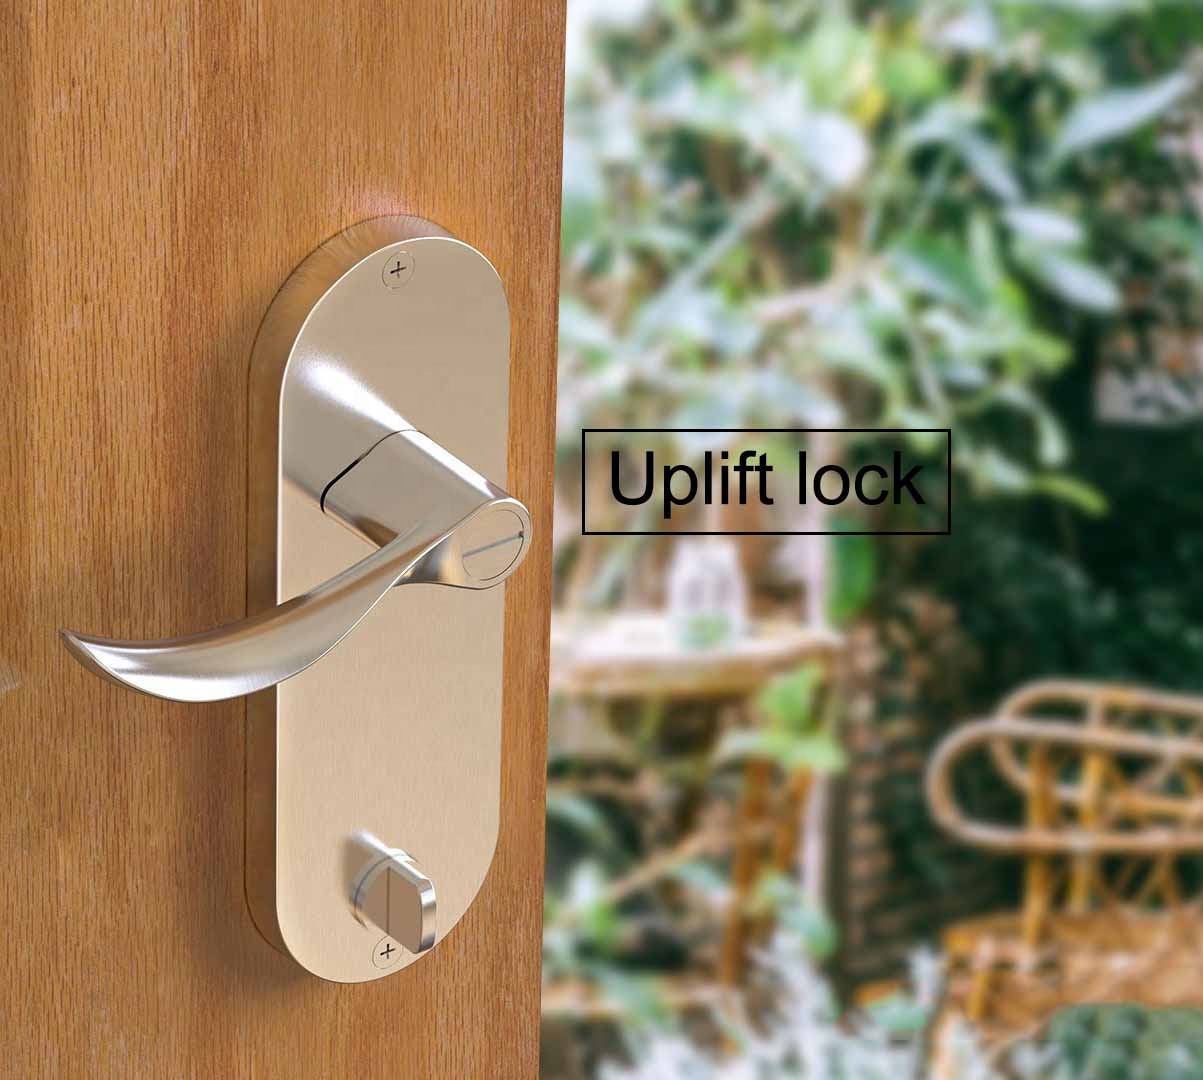 Biometric Double Side Smart Door Lock System Control Smart Home Lock Door Fingerprint Smart Digital Door Lock 